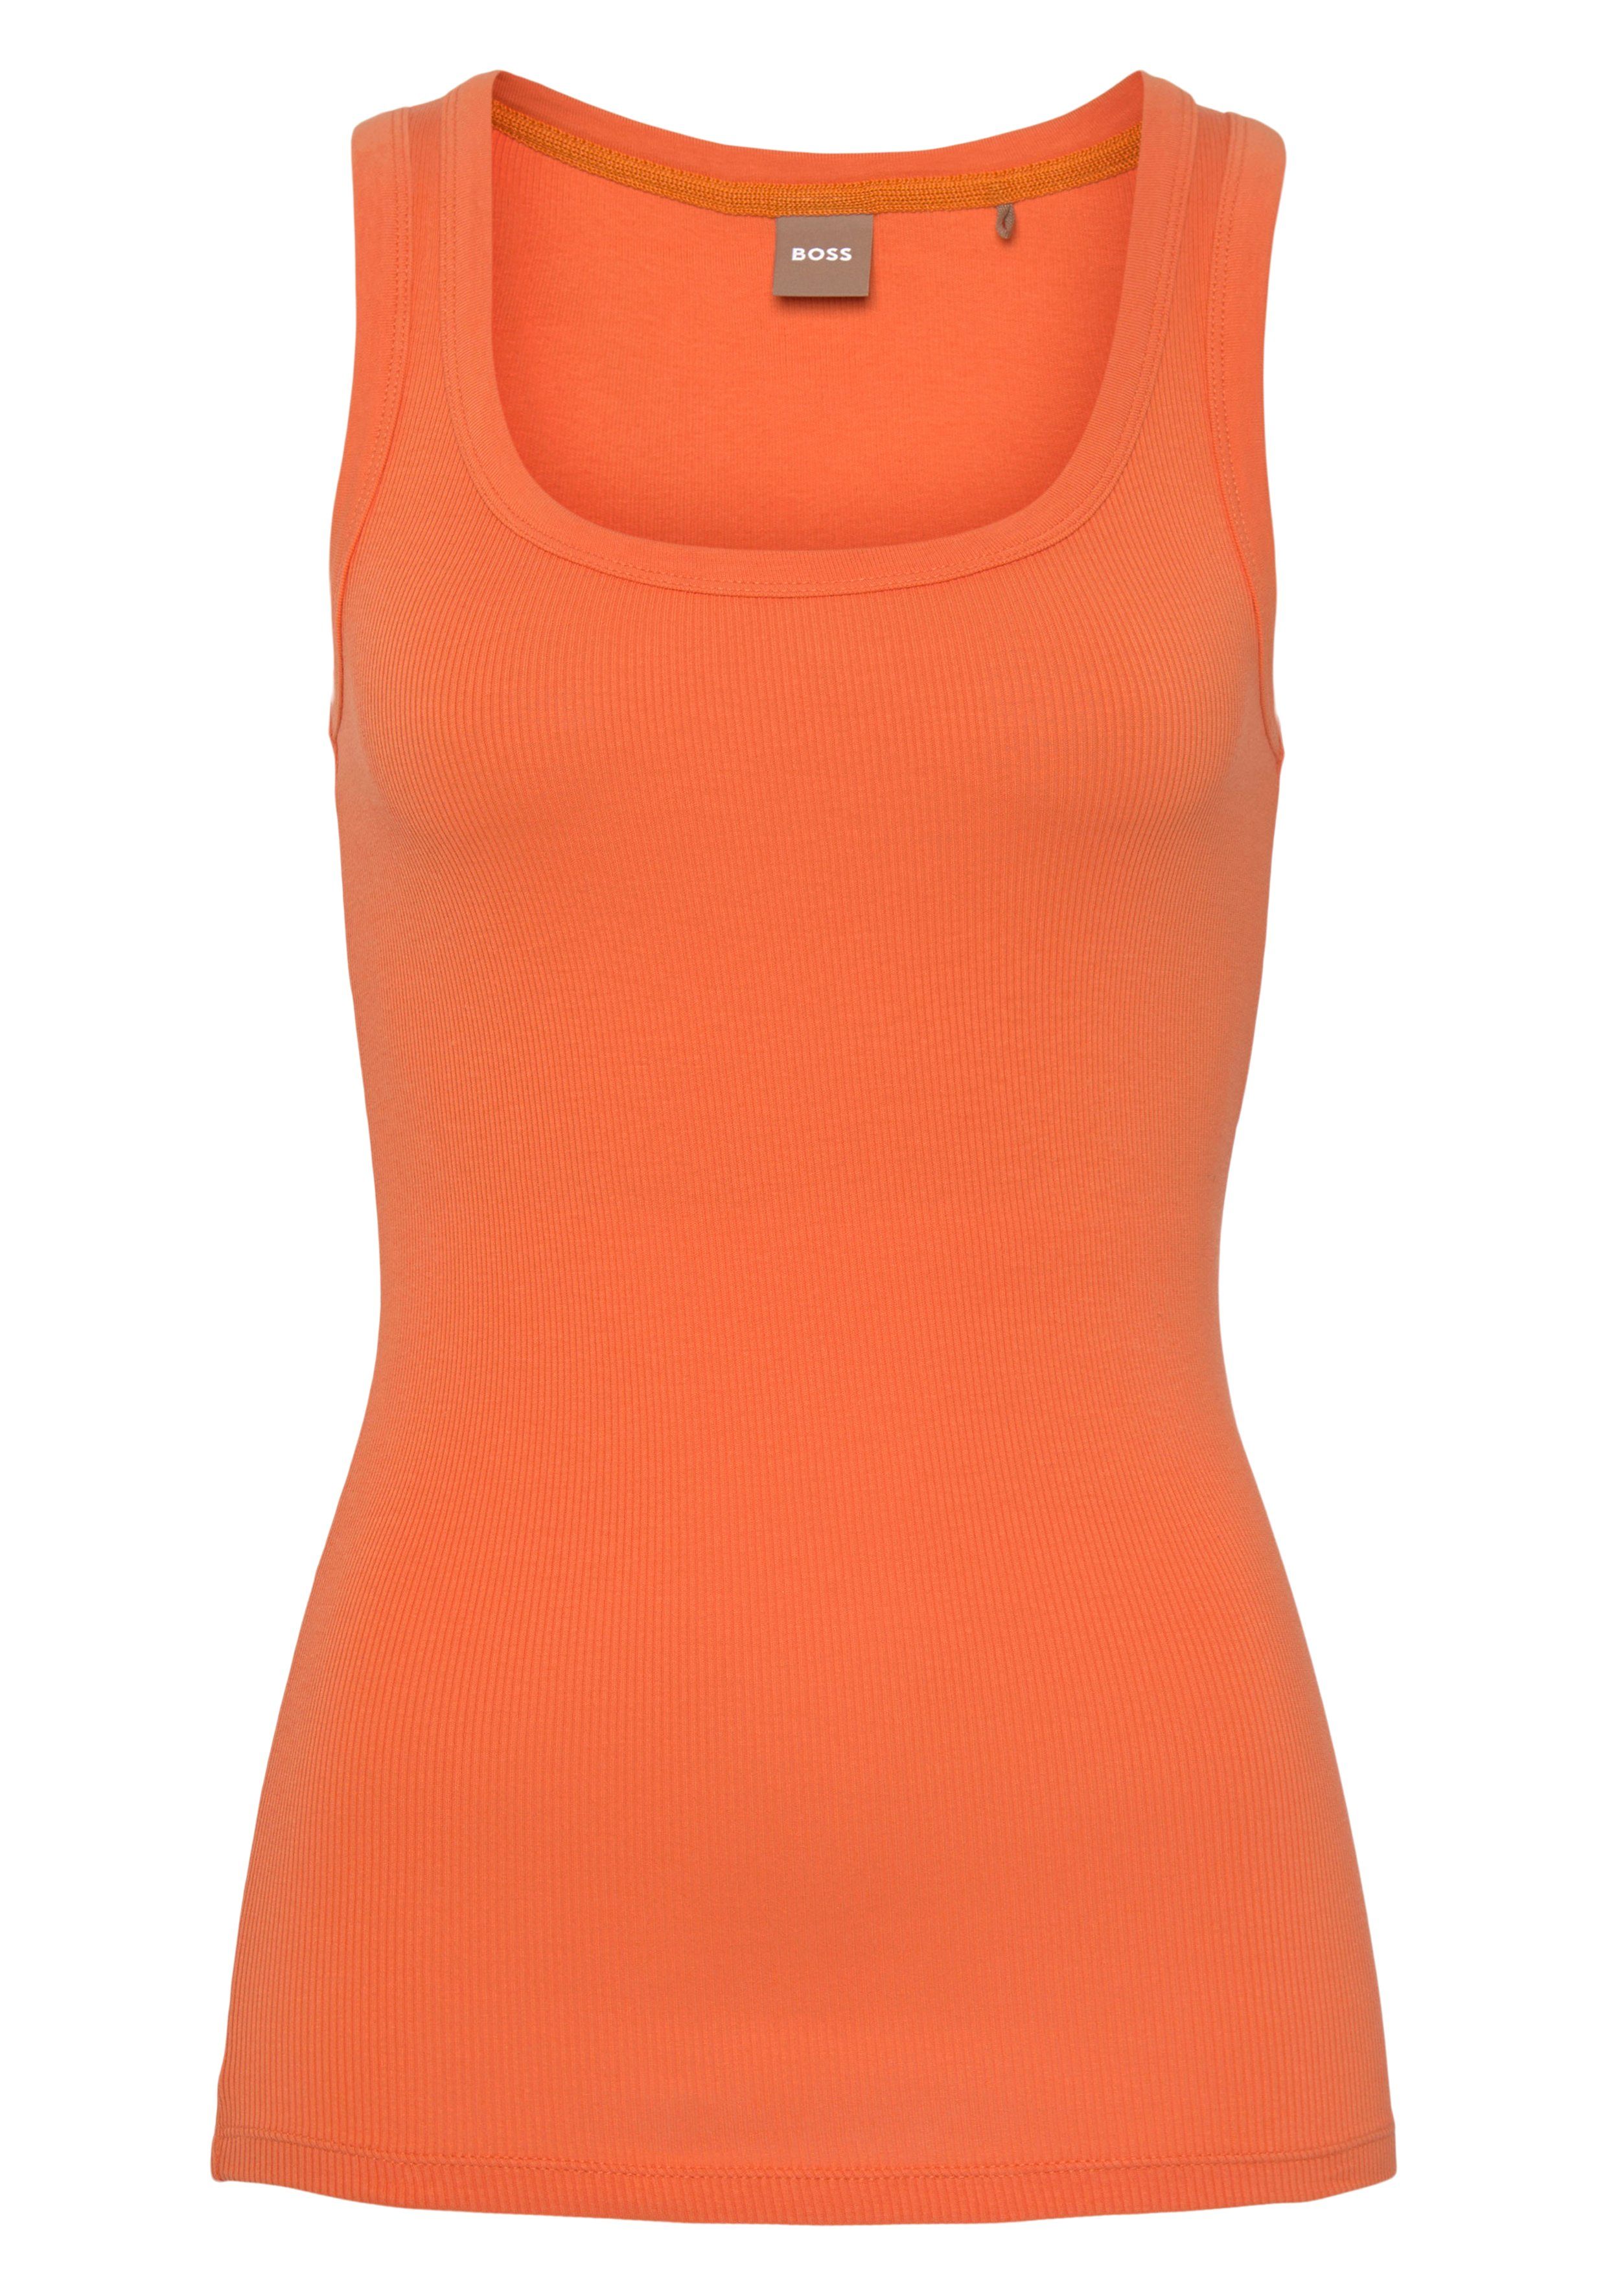 BOSS BOSS innen ORANGE Bright_Orange Markenstreifen Muskelshirt mit